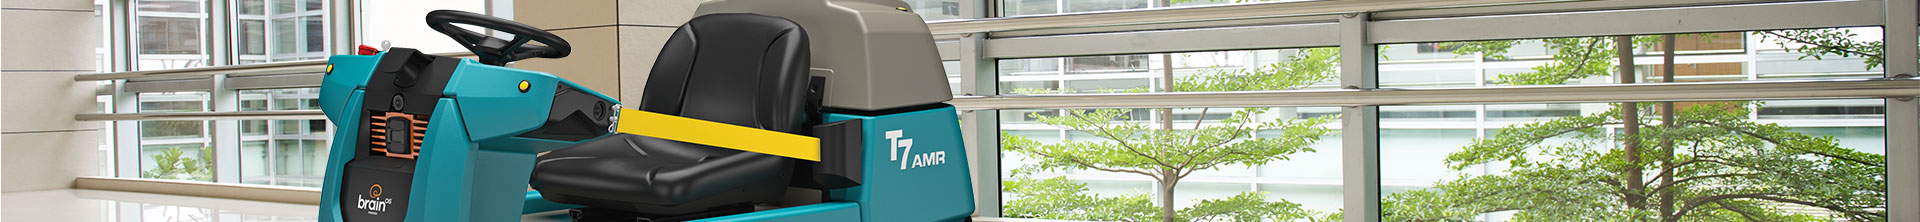 T7AMR Robotik-Scheuersaugmaschine reinigt ein Krankenhaus